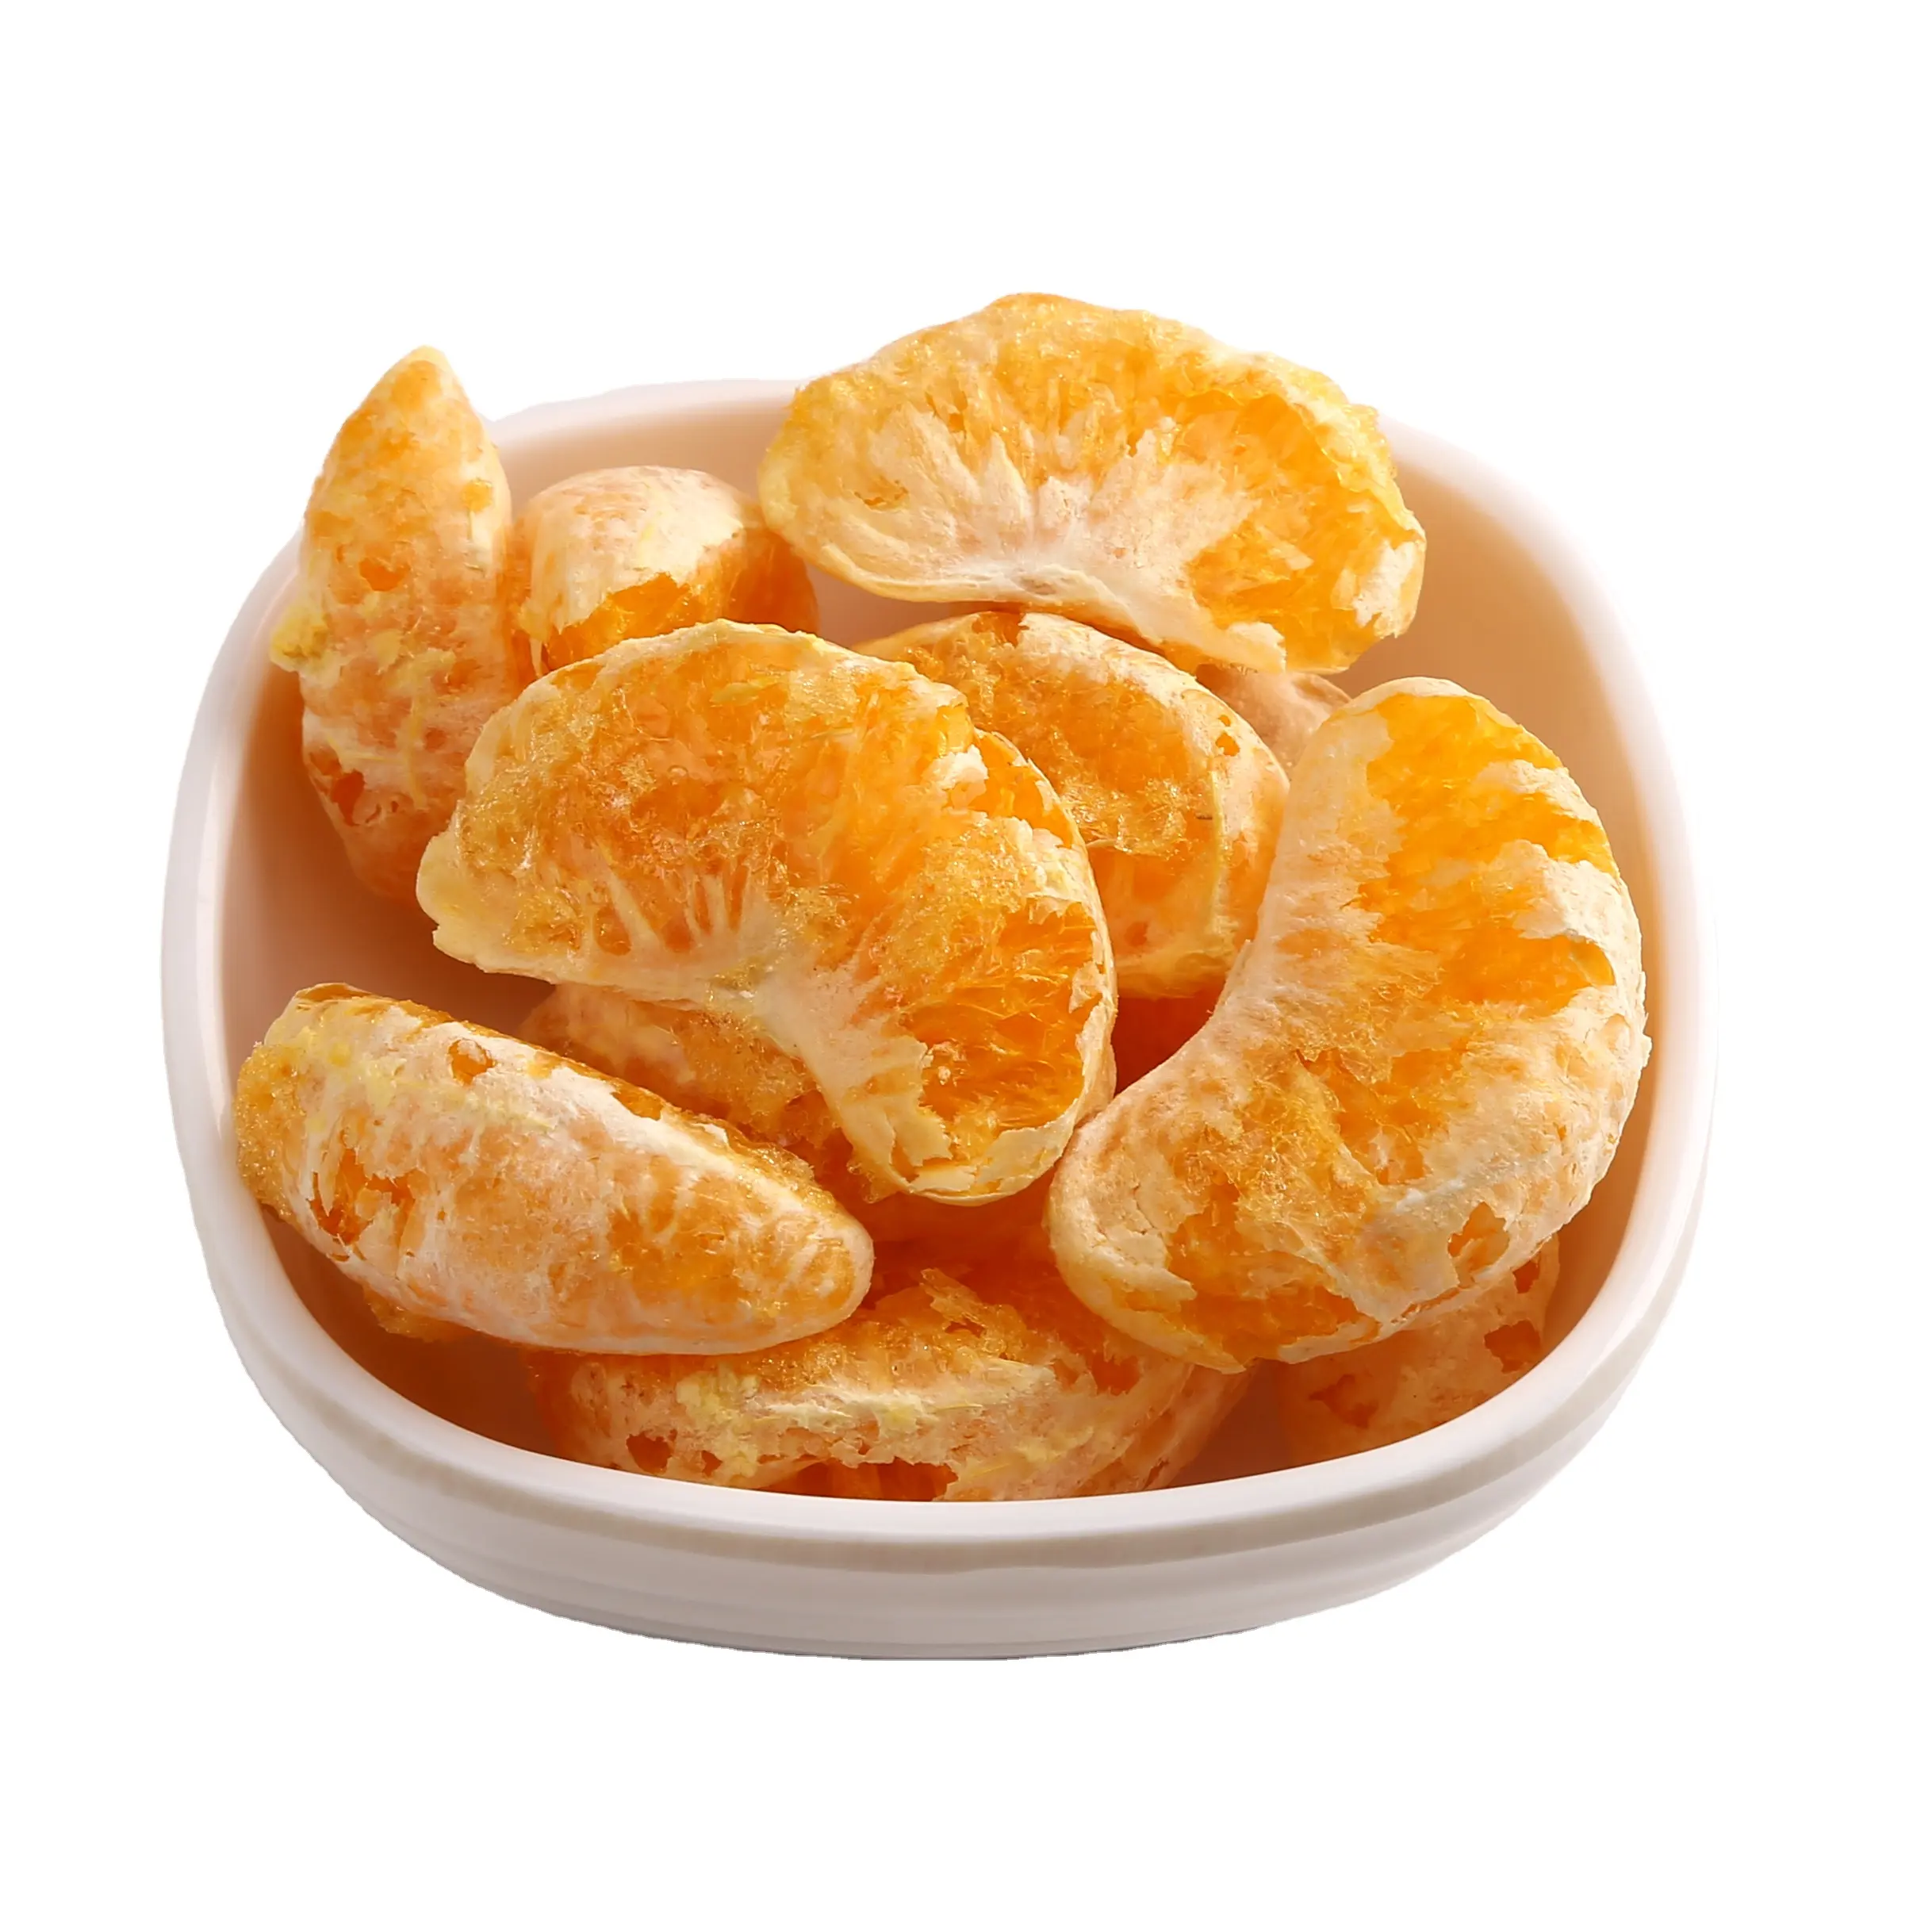 بالجملة فاكهة الفاكهة المقدمة المجففة شاي البرتقال جيد لمكملات الفيتامينات بالجملة FD الطعام المجفف اللسان